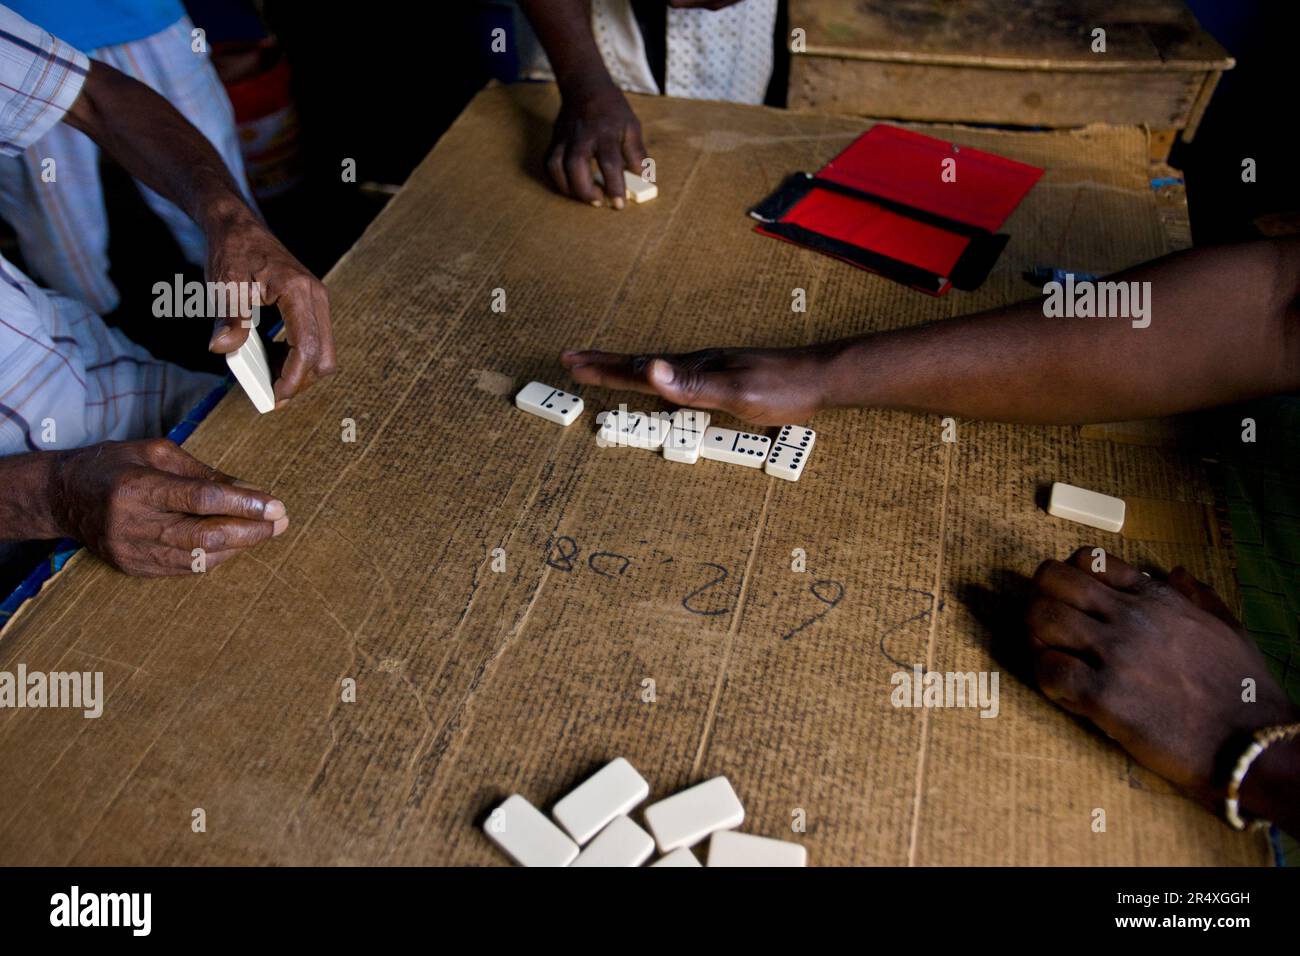 Gli uomini giocano a domino su una superficie di cartone: Flagstaff, Giamaica, Indie occidentali Foto Stock